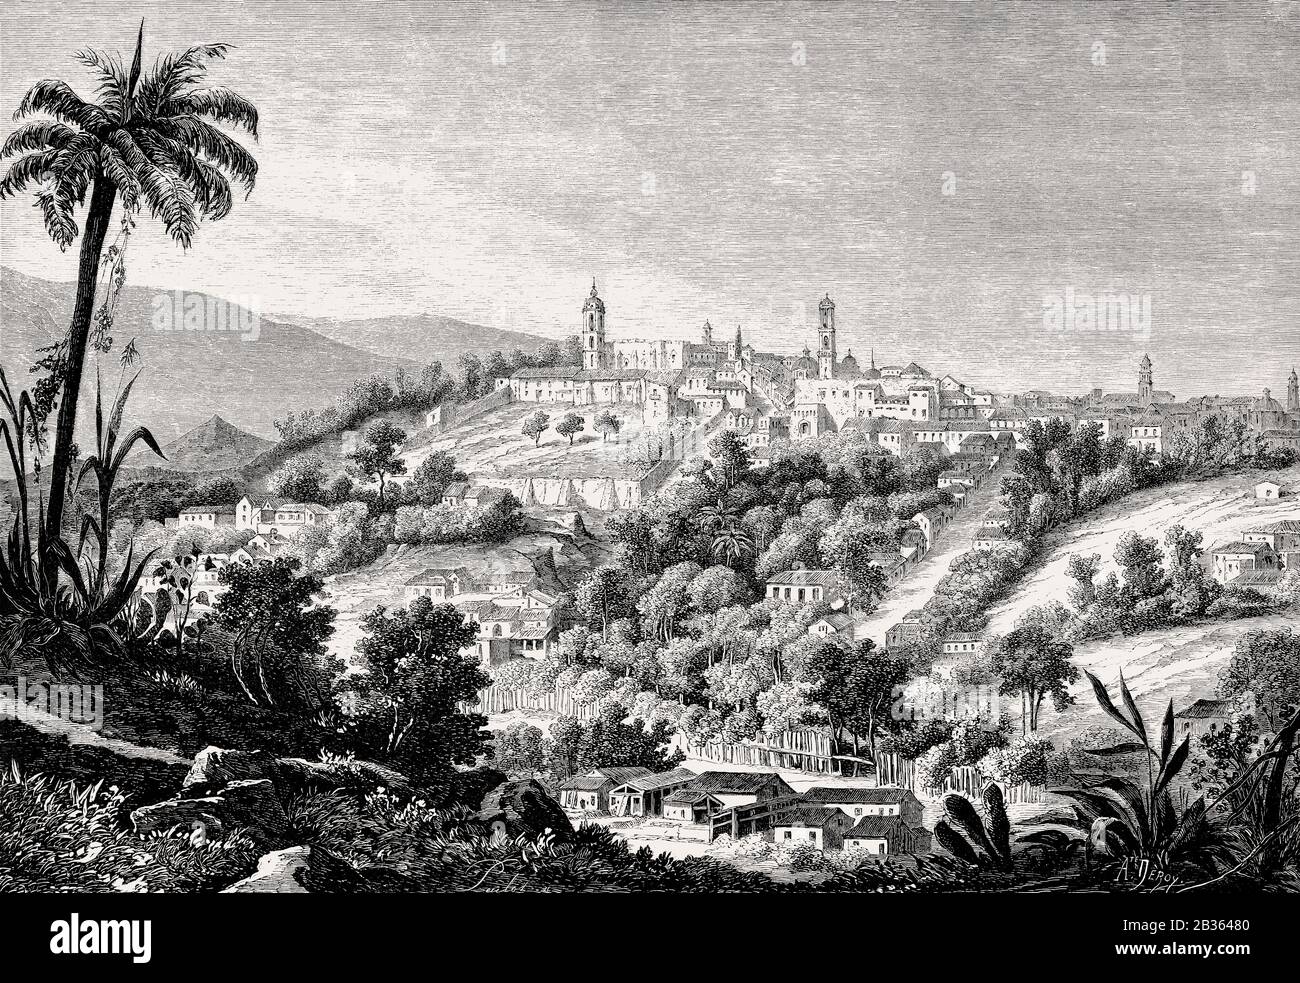 Jalapa, République du Guatemala, Amérique centrale, XIXe siècle Banque D'Images